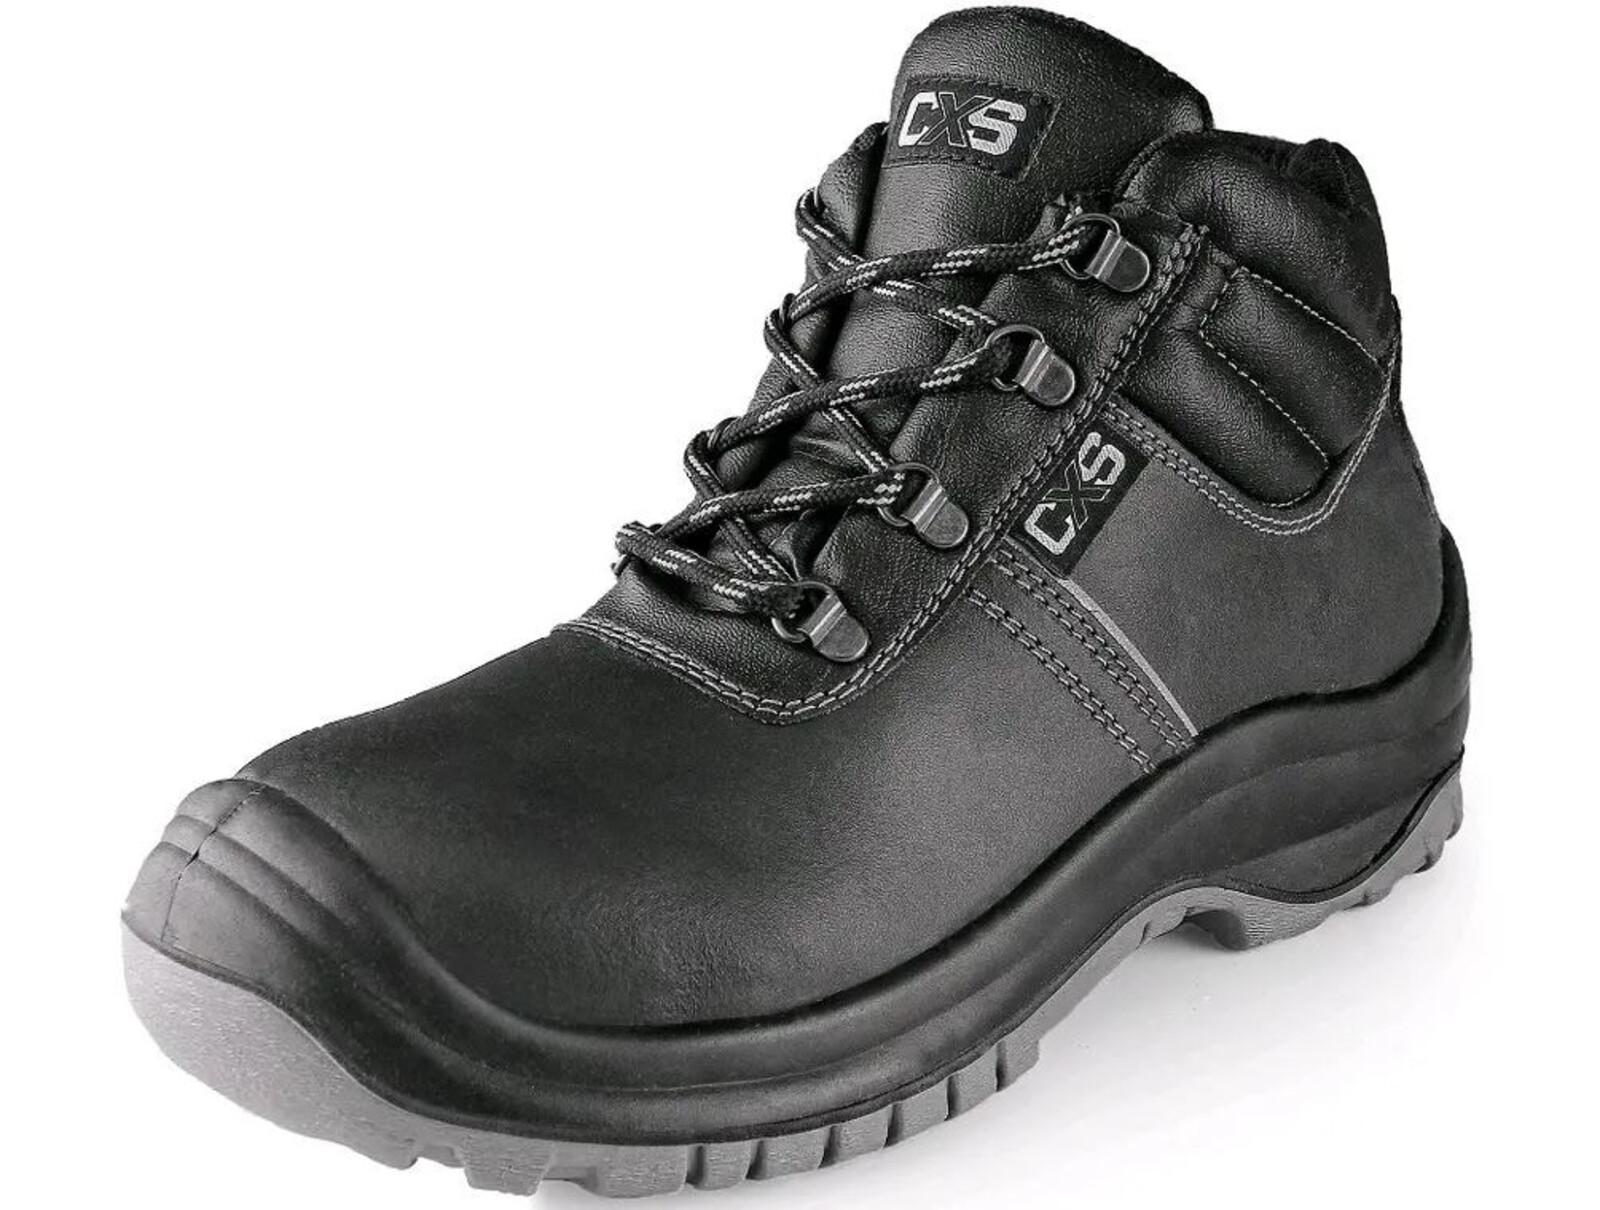 Bezpečnostná členková obuv CXS Safety Steel Mangan S3 - veľkosť: 47, farba: čierna